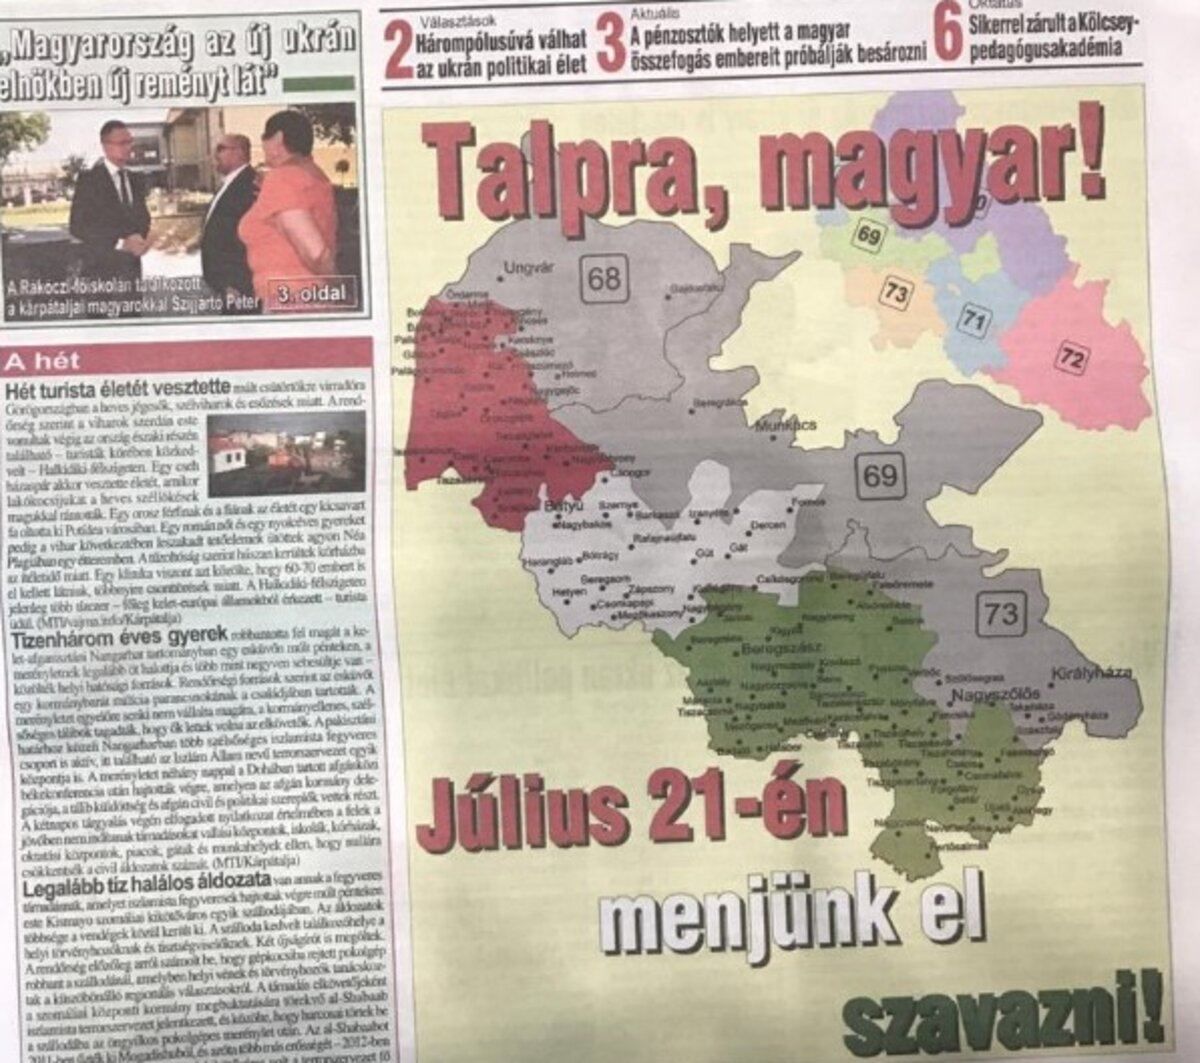 Спілка угорців видала газету із картою Закарпаття у складі Угорщини